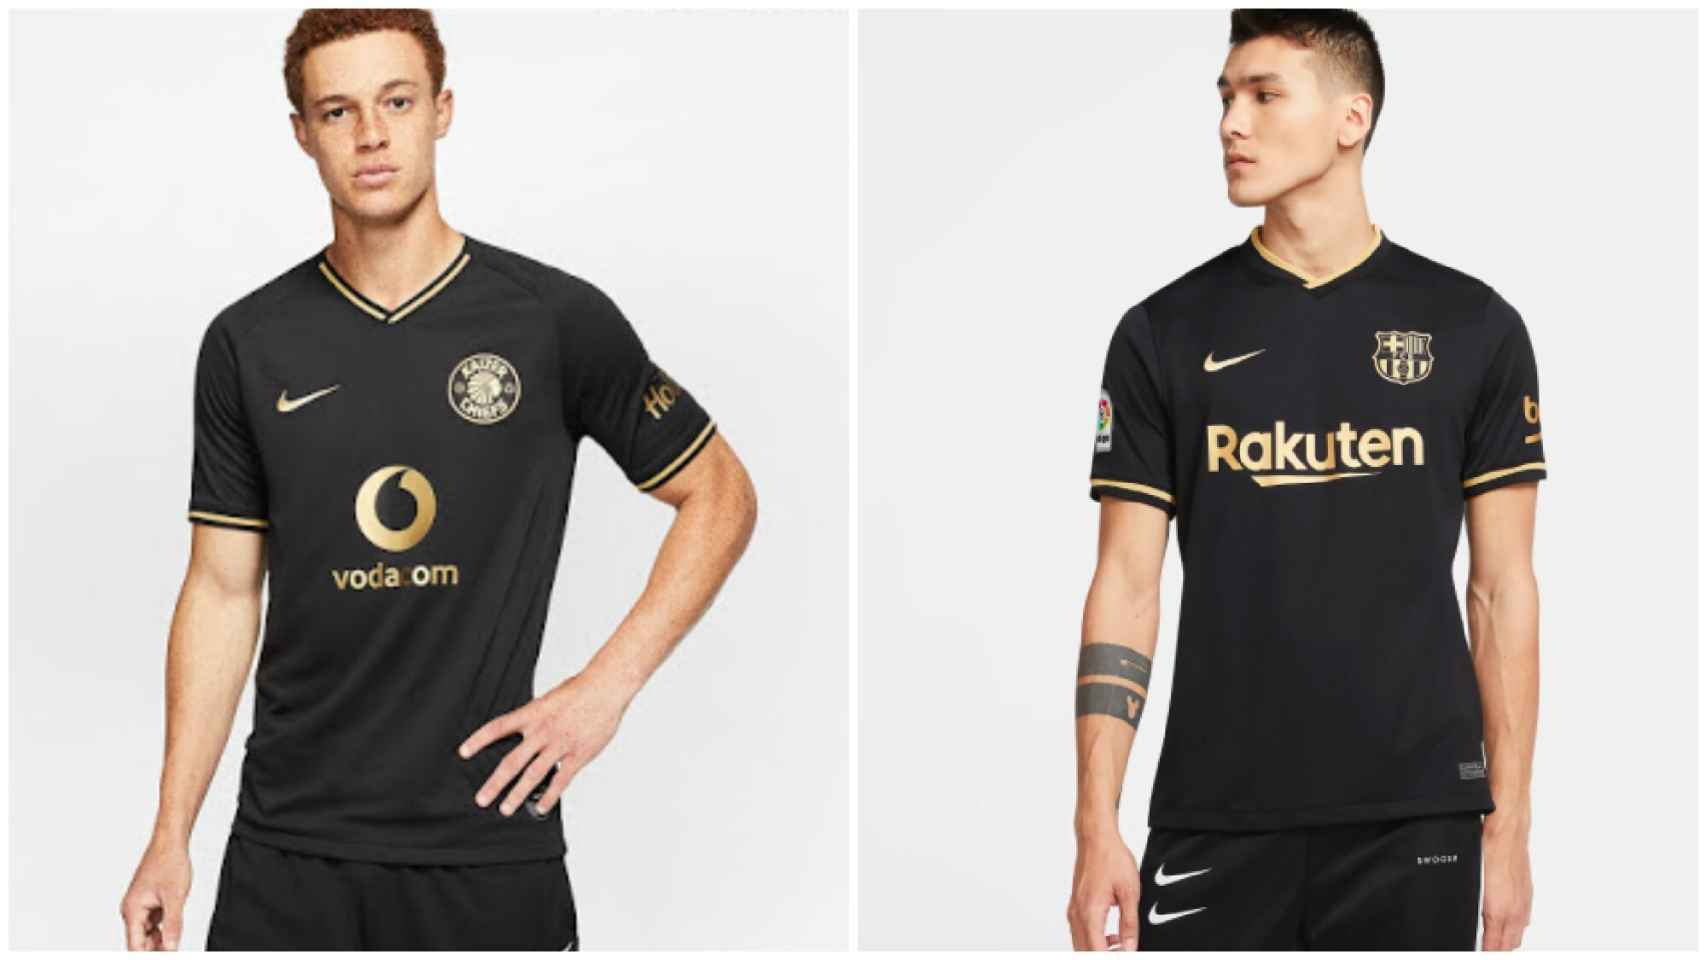 Las camisetas casi idénticas de Kaizer Chiefs y Barcelona